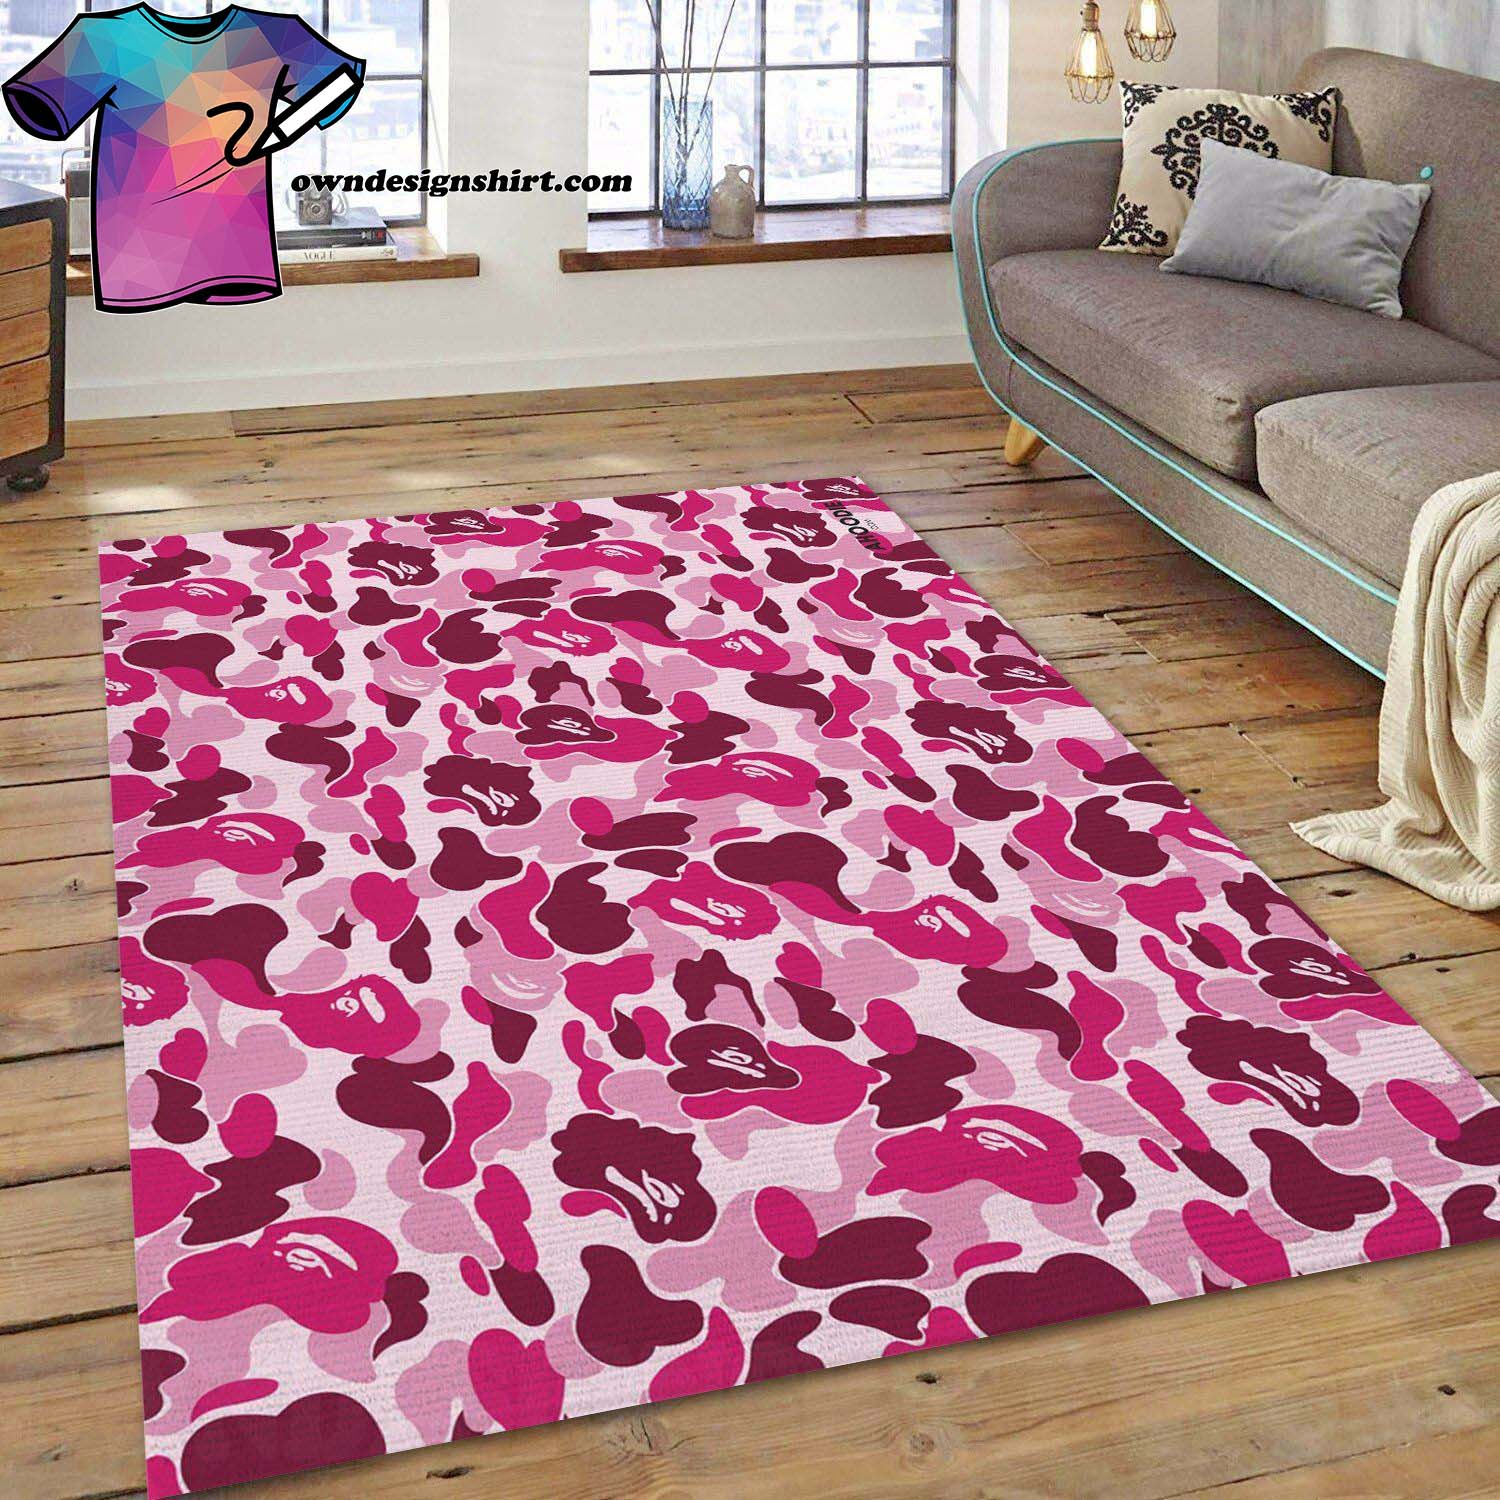 Bape area rug for christmas fashion brand rug living room rug